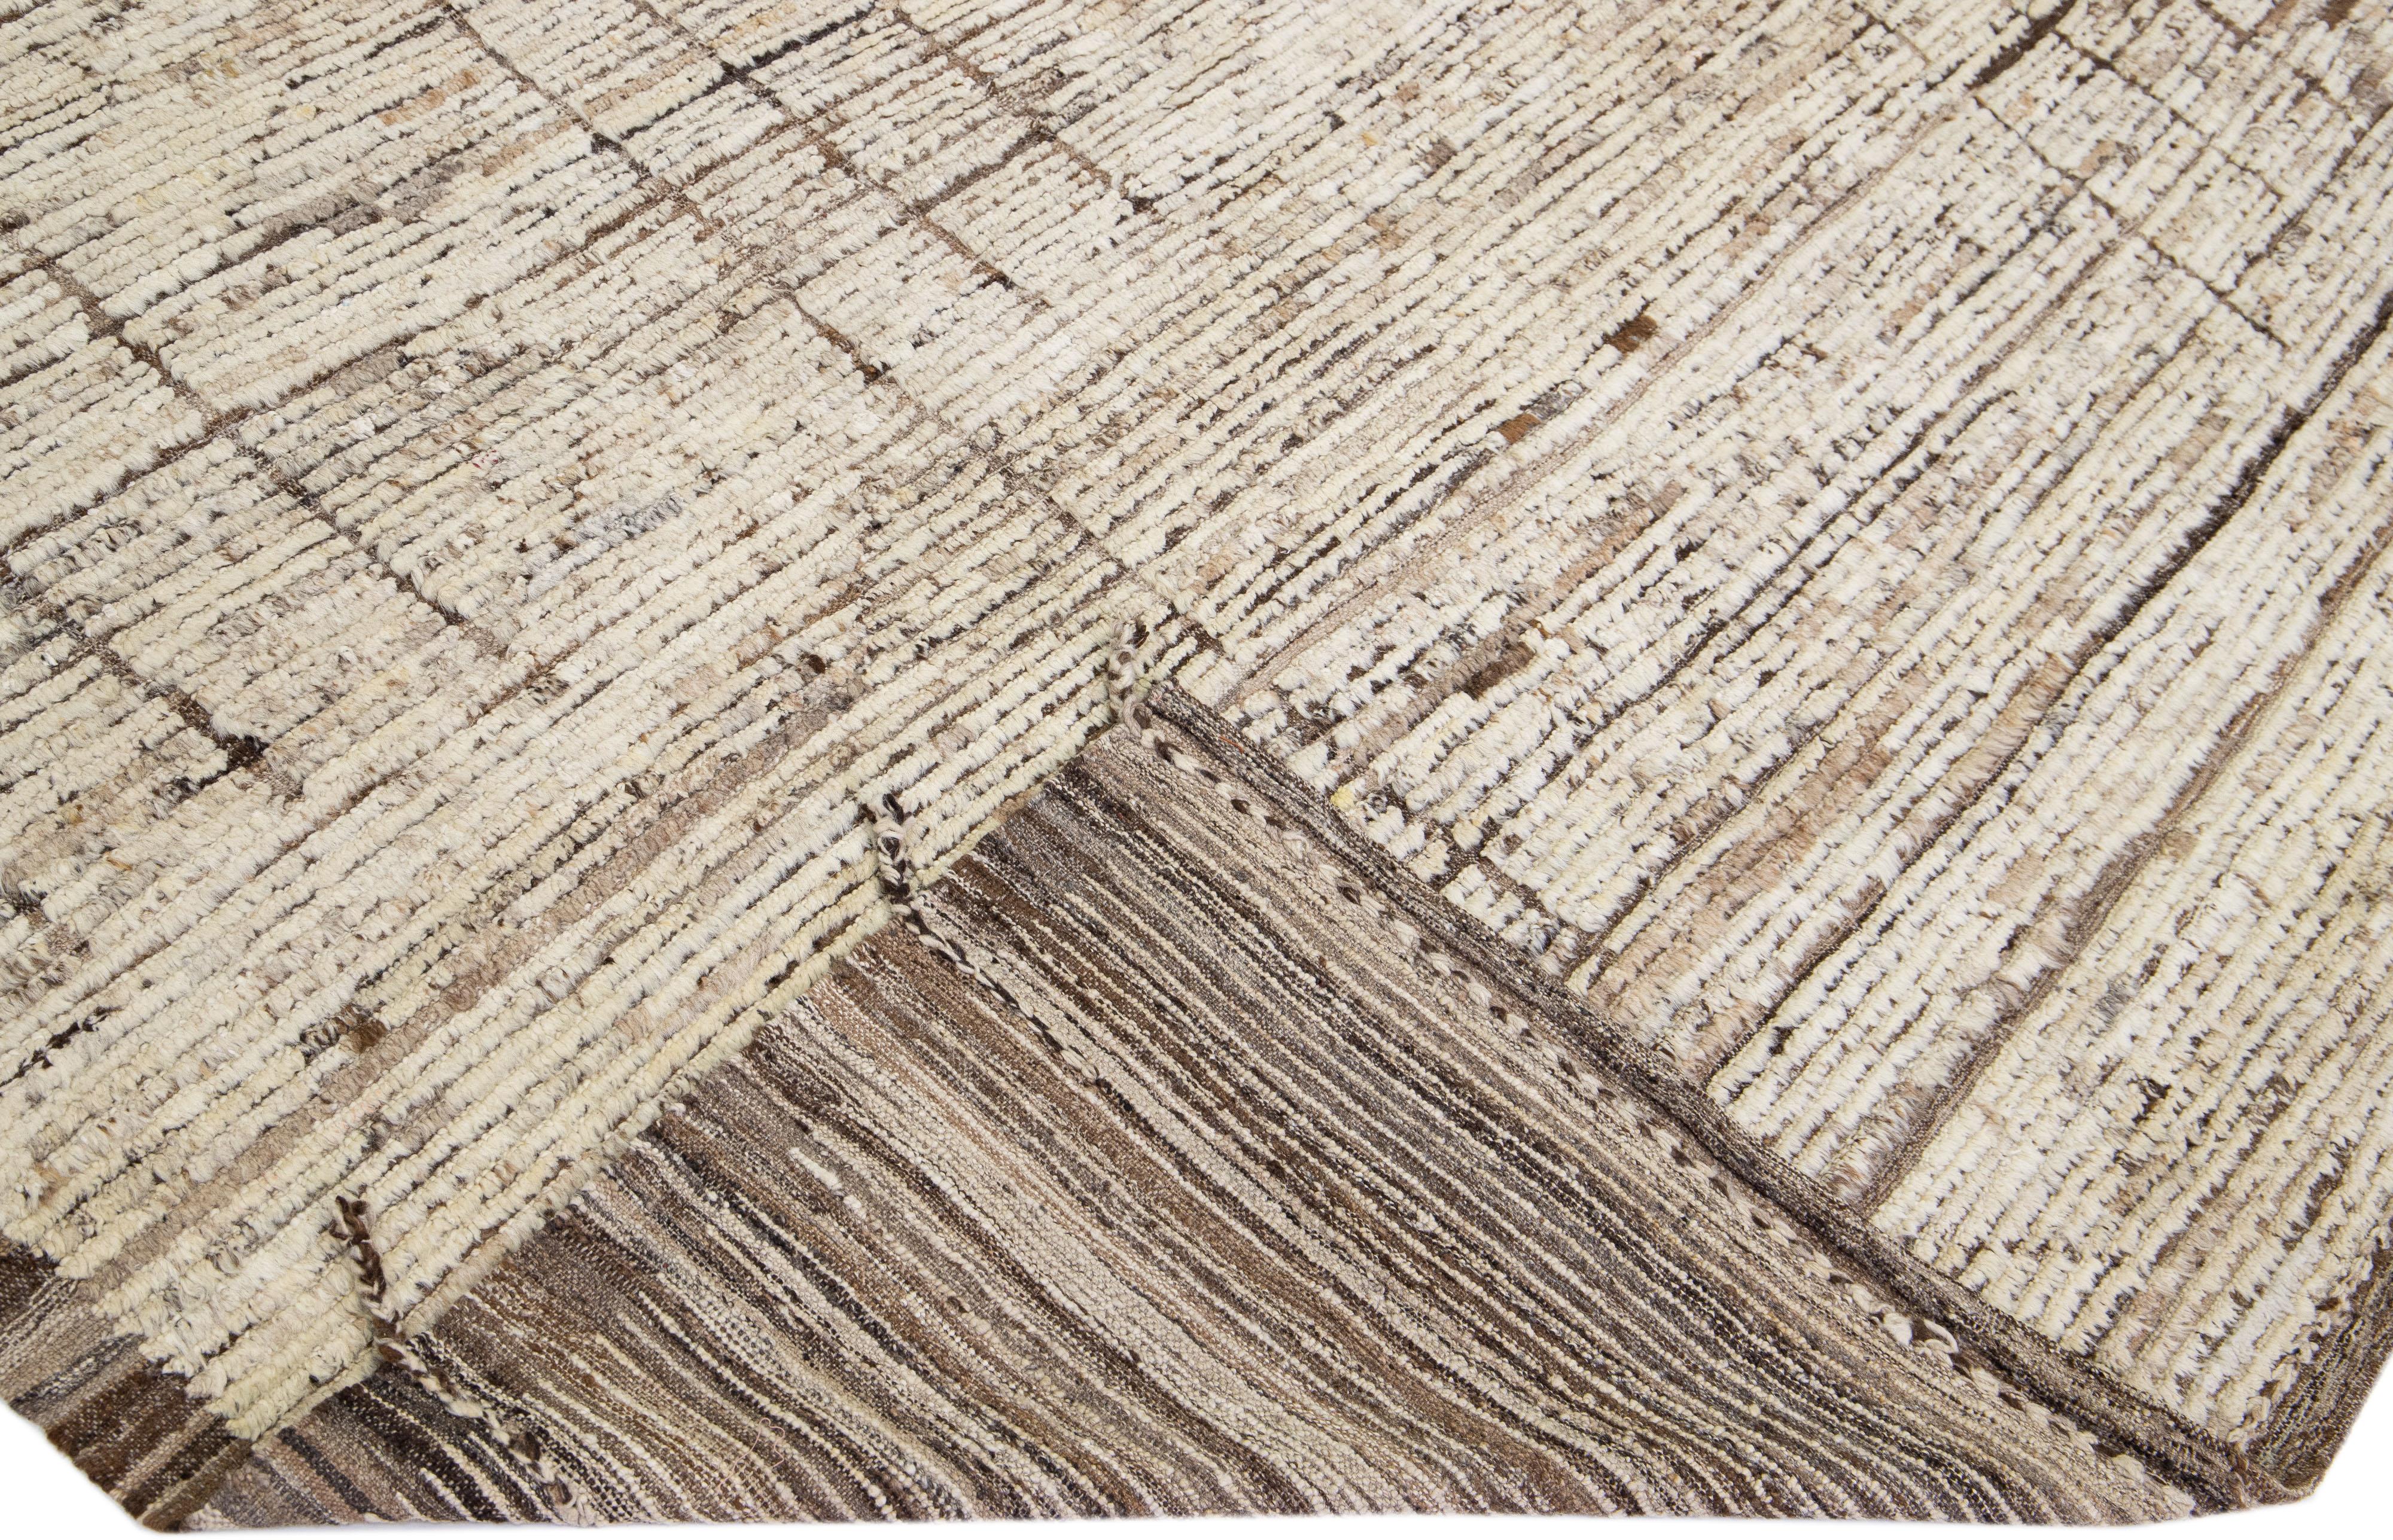 Schöner handgefertigter Wollteppich im marokkanischen Stil mit beigem Farbfeld. Dieser moderne Teppich hat braune Akzente und zeigt ein wunderschönes geometrisches Boho-Motiv.

Dieser Teppich misst: 11'9